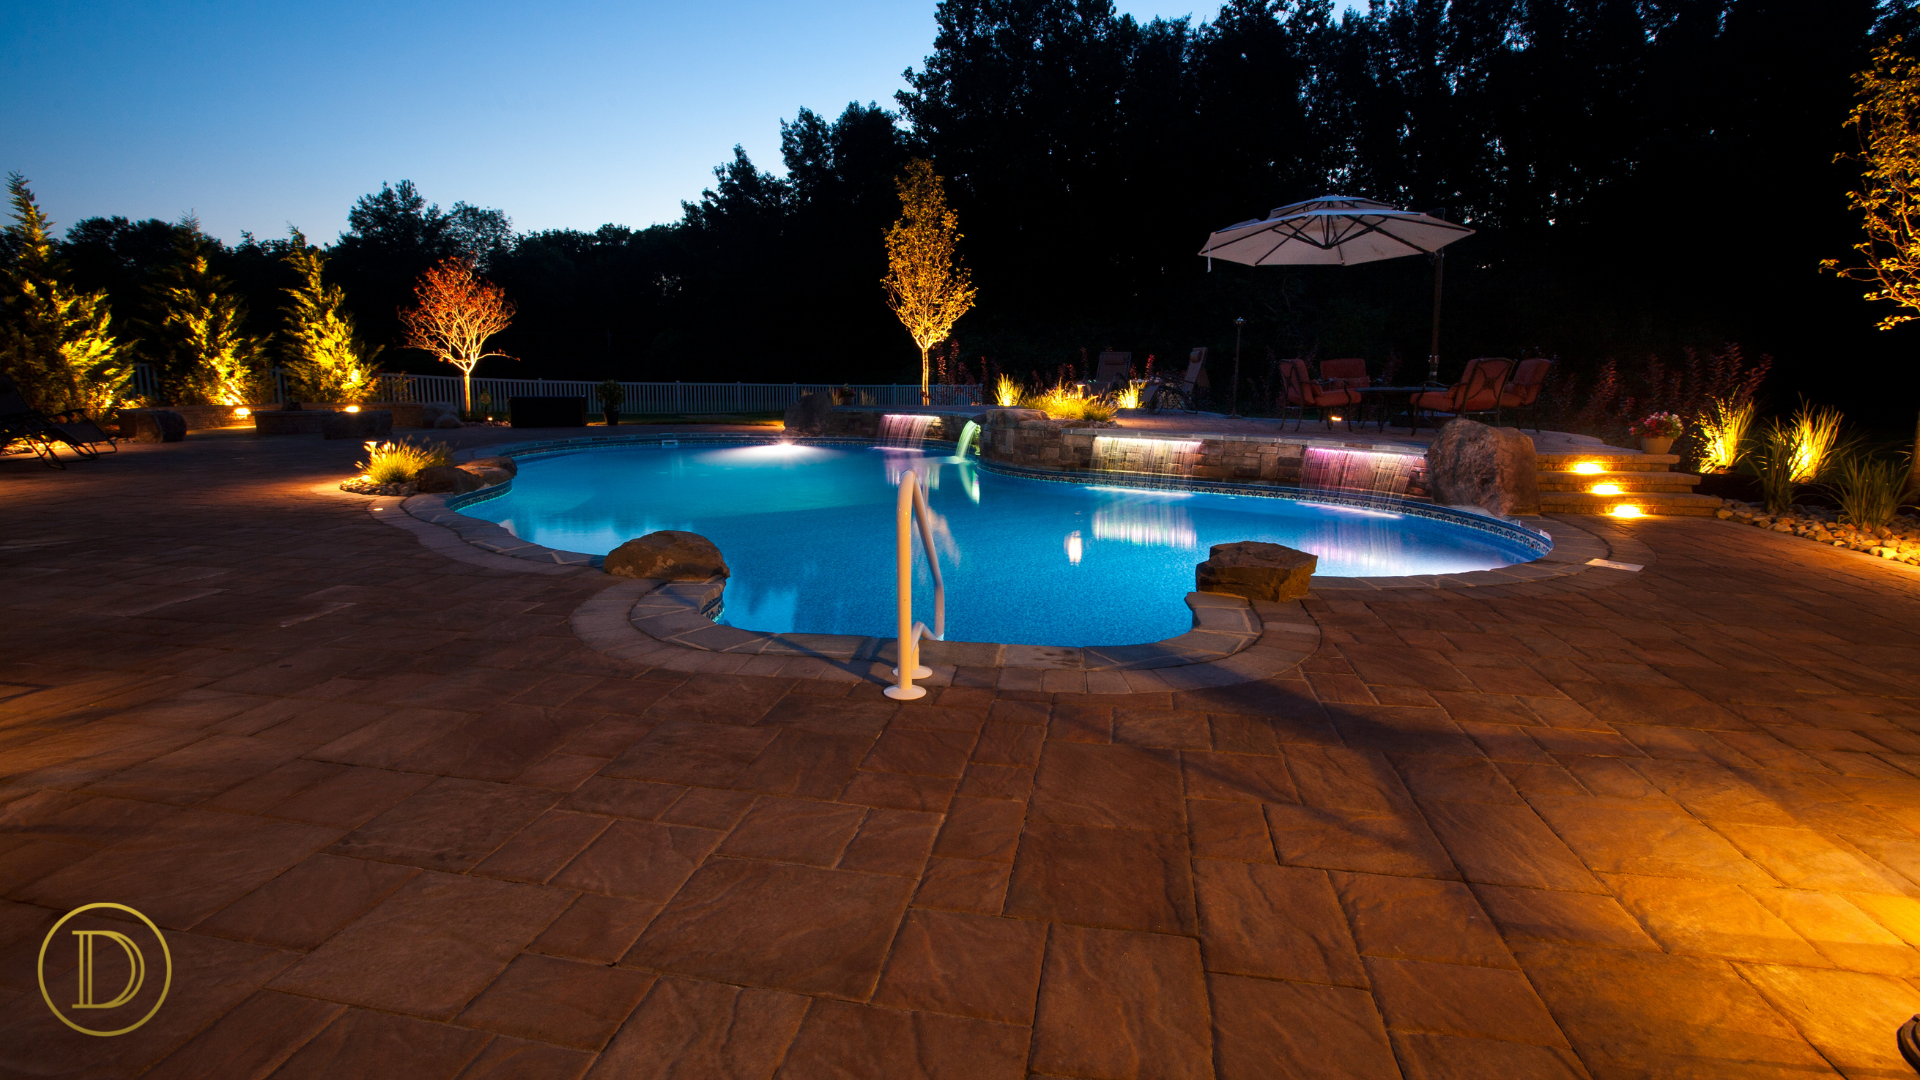 Pool, Pool & Spa Design, Pools, poolscape, hardscape, pool patio, Night Lighting